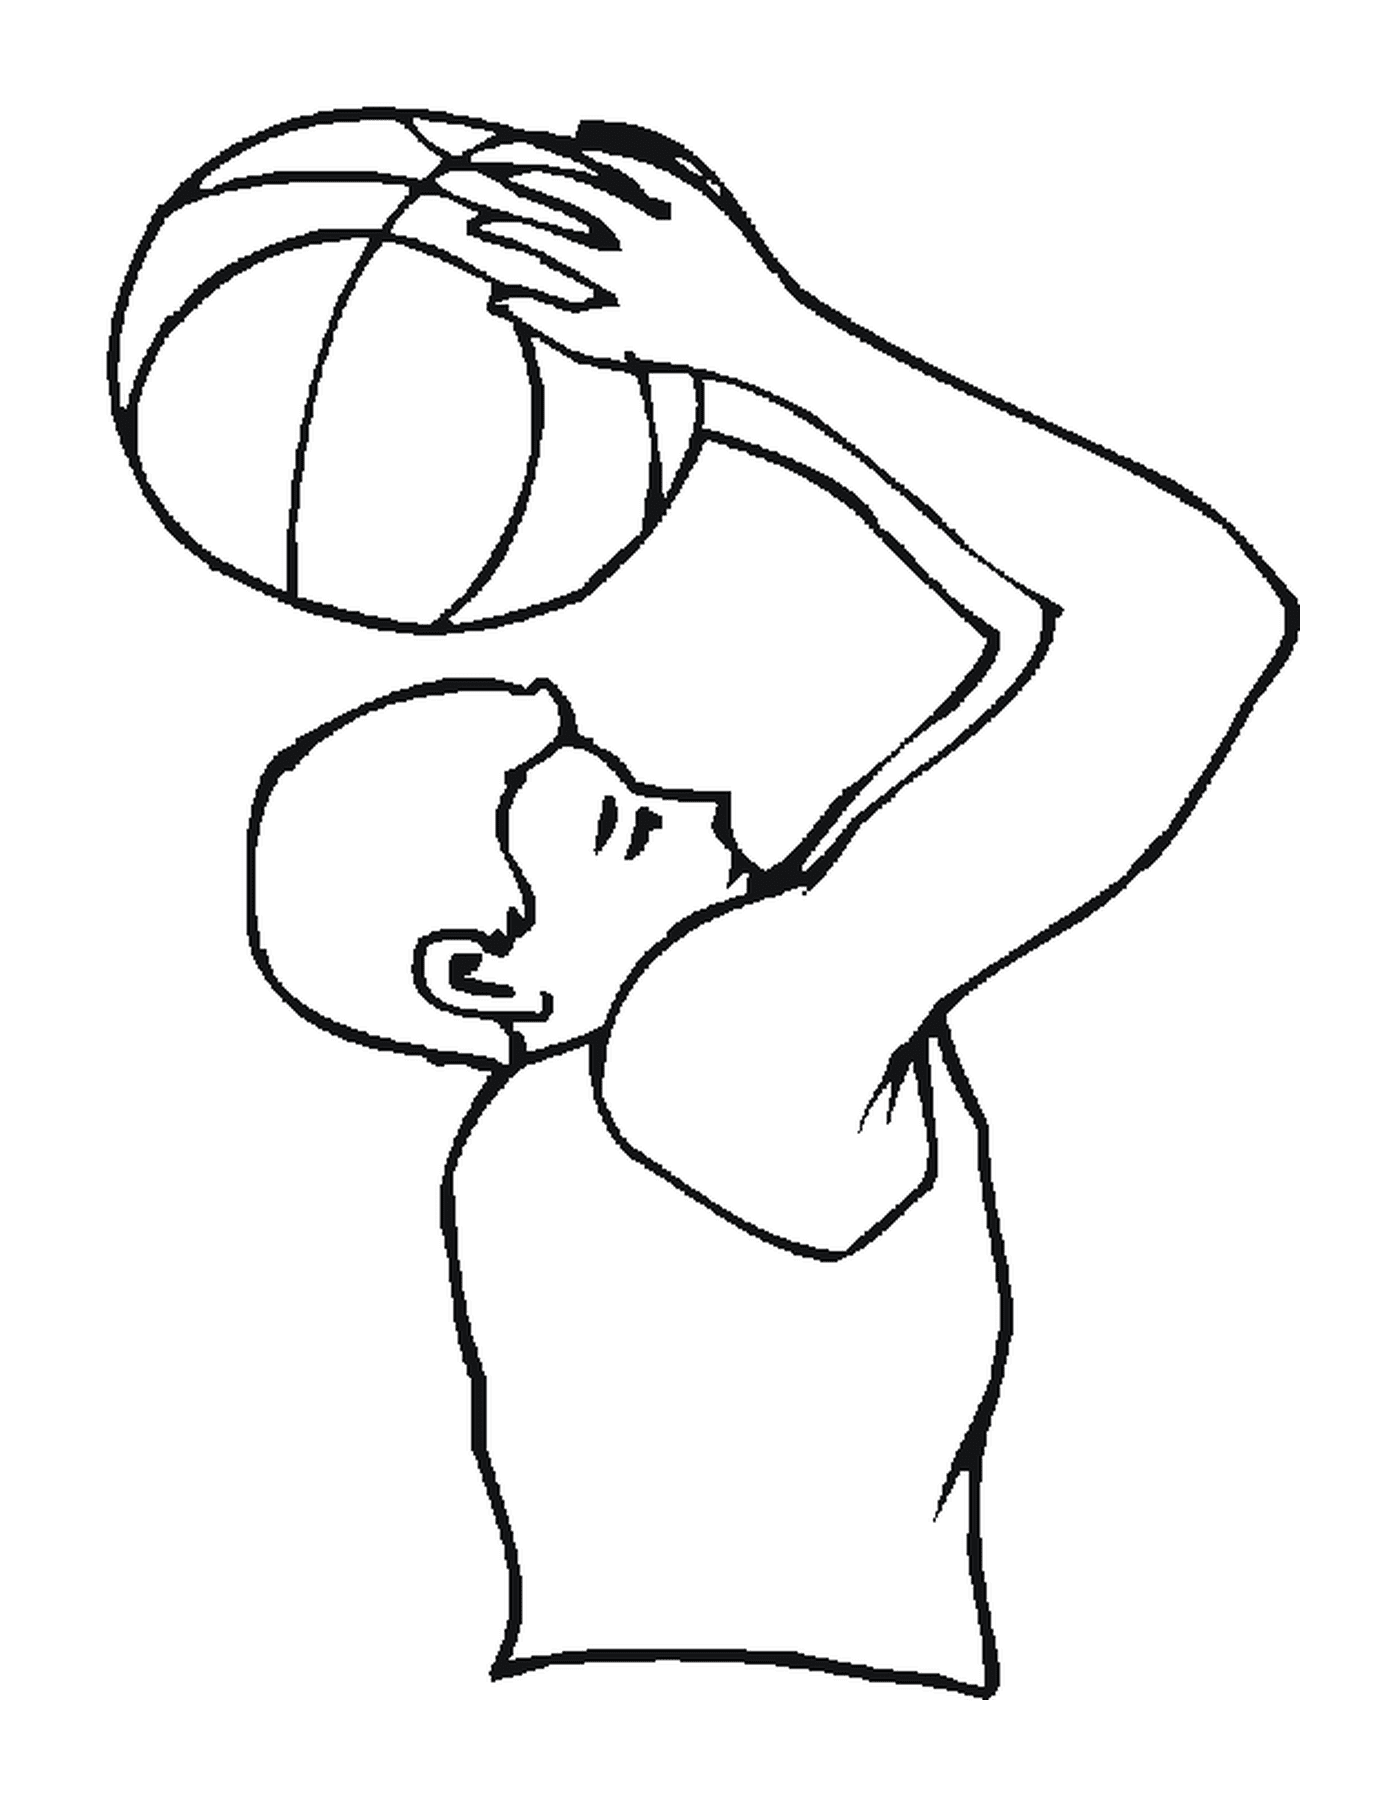  A man holds a basketball ball 